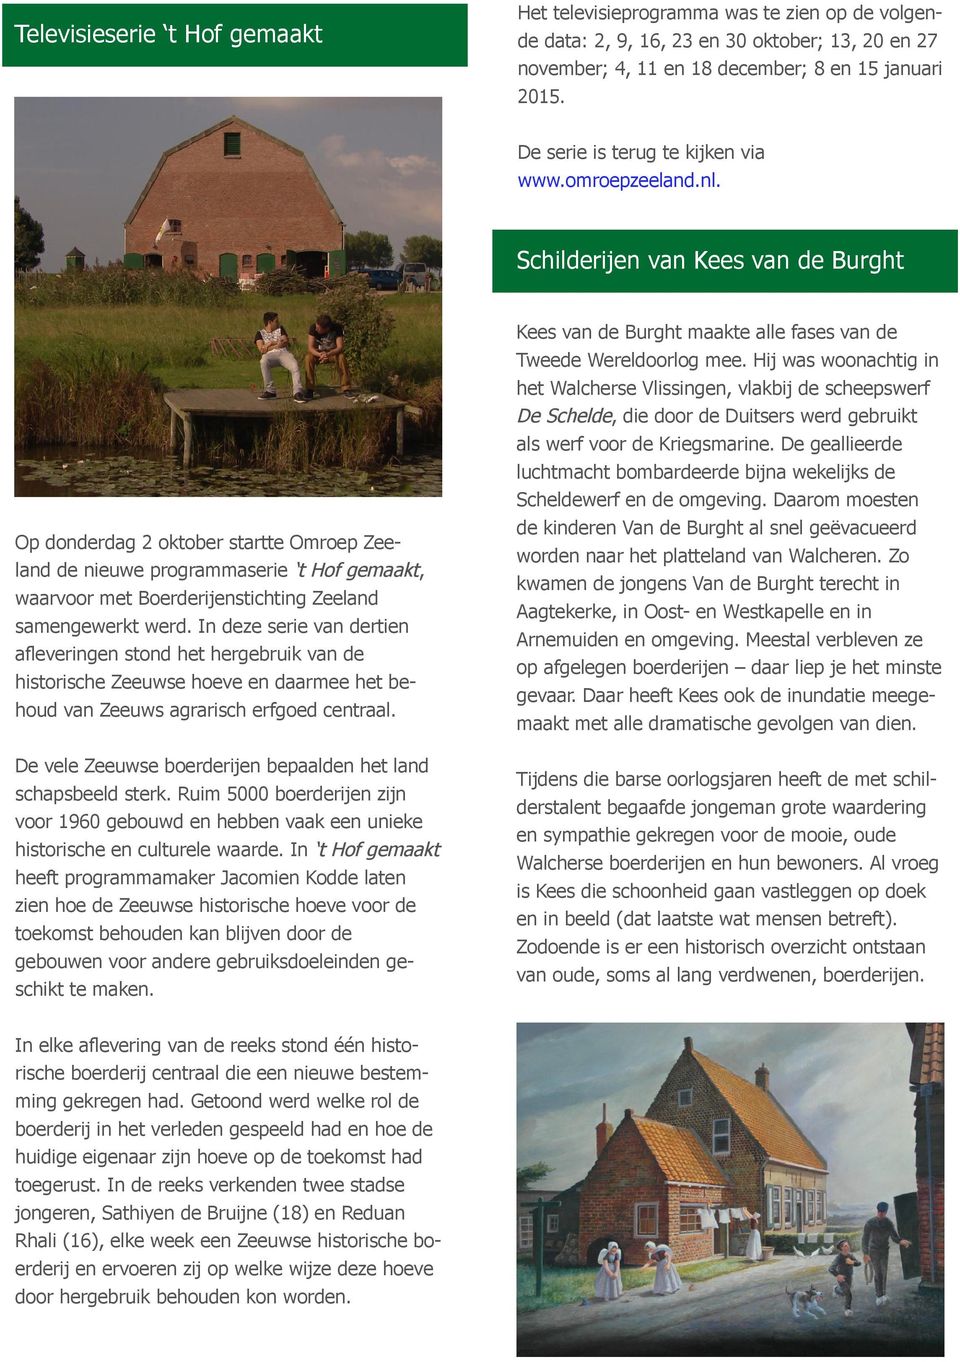 Schilderijen van Kees van de Burght Op donderdag 2 oktober startte Omroep Zeeland de nieuwe programmaserie t Hof gemaakt, waarvoor met Boerderijenstichting Zeeland samengewerkt werd.